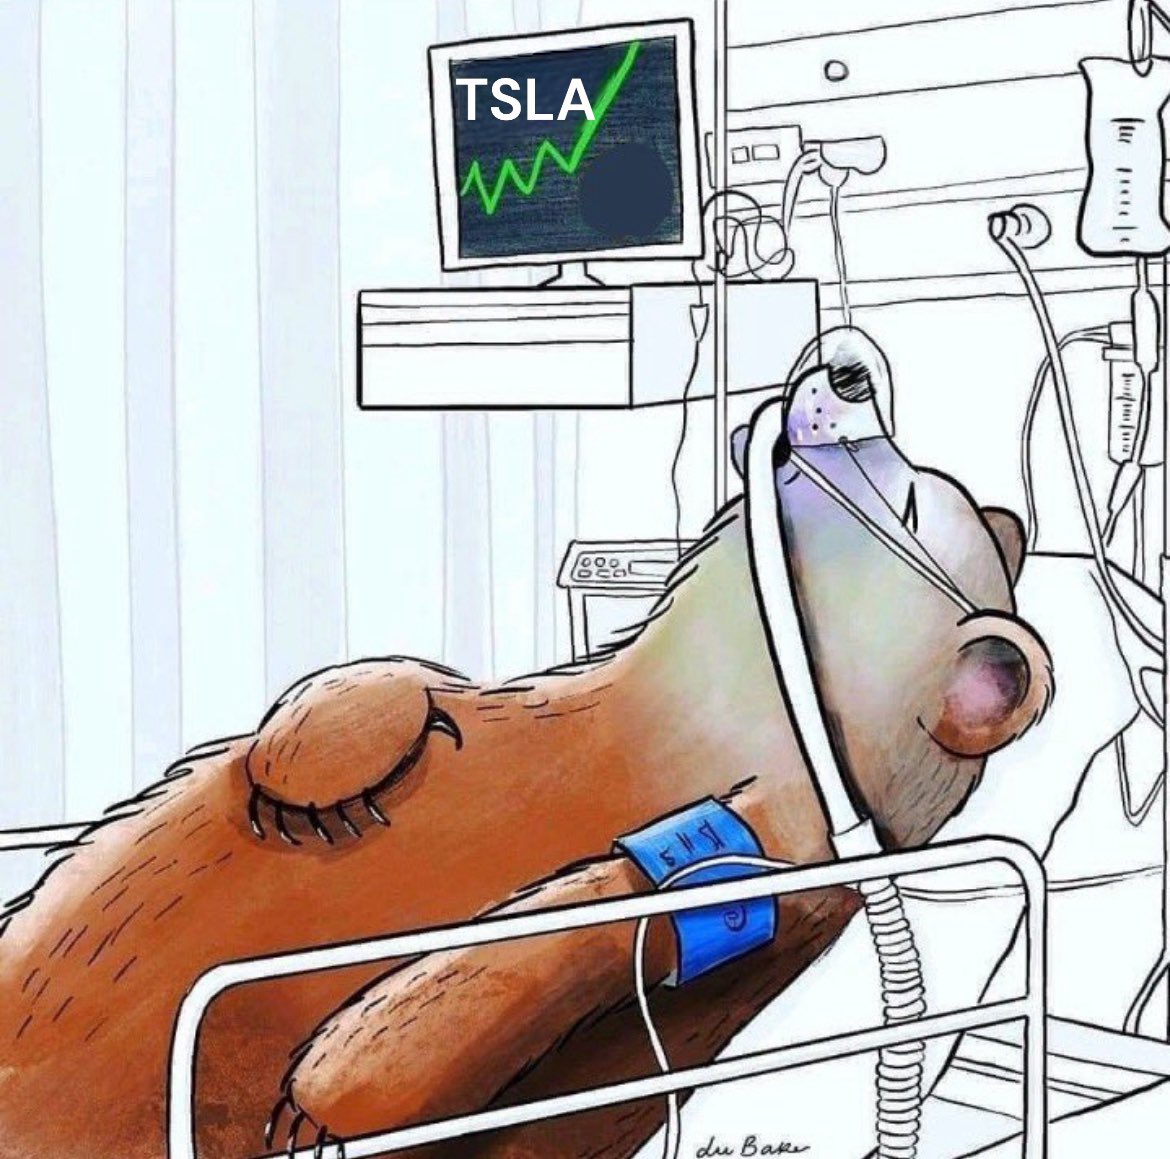 $TSLA Tesla shorts this past week